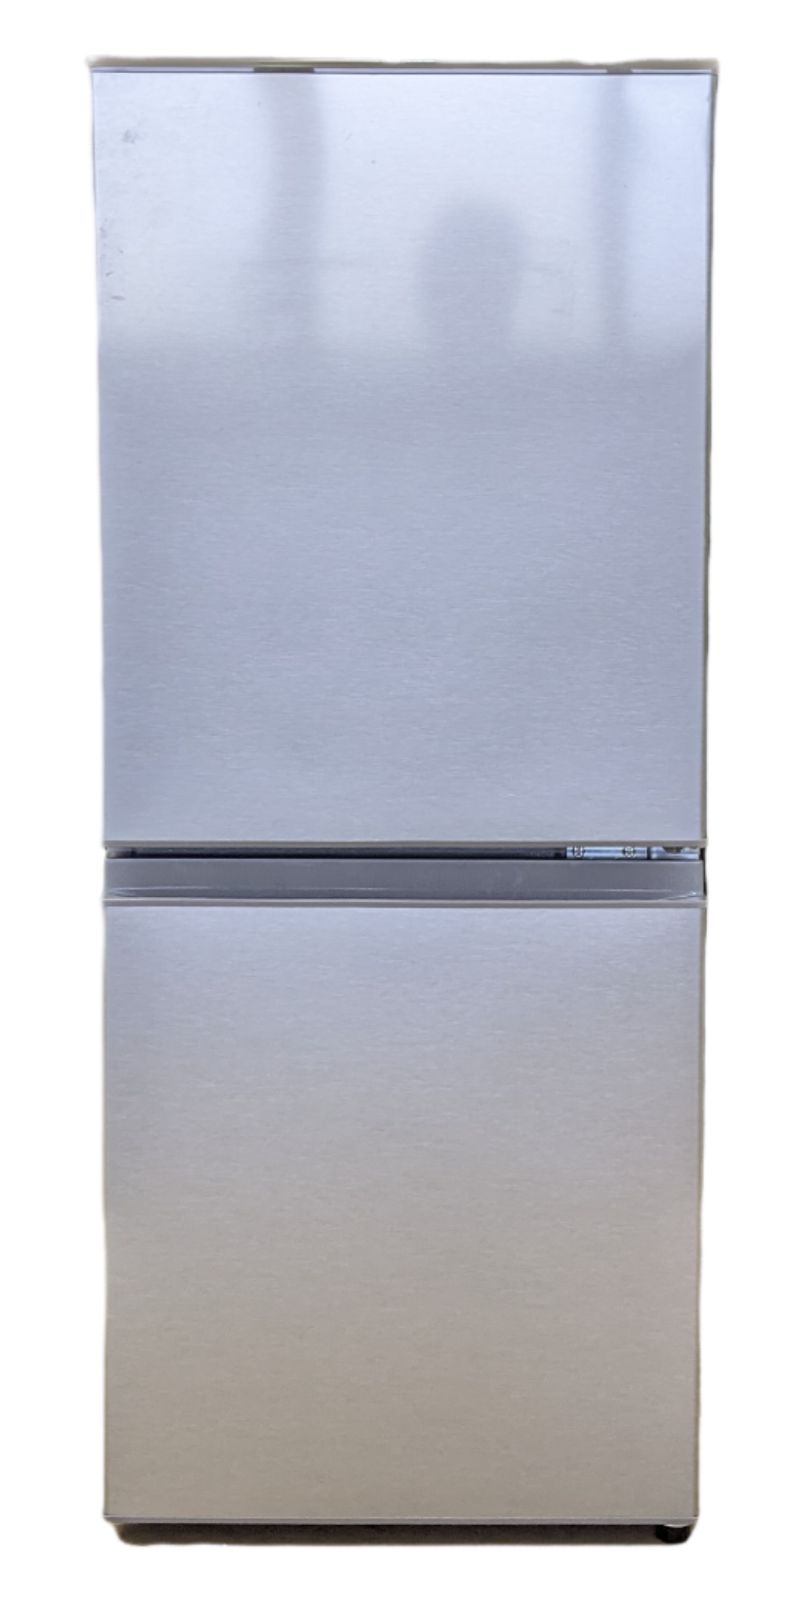 ノンフロン冷凍冷蔵庫(AQUA/2ドア/2020年製) - メルカリ